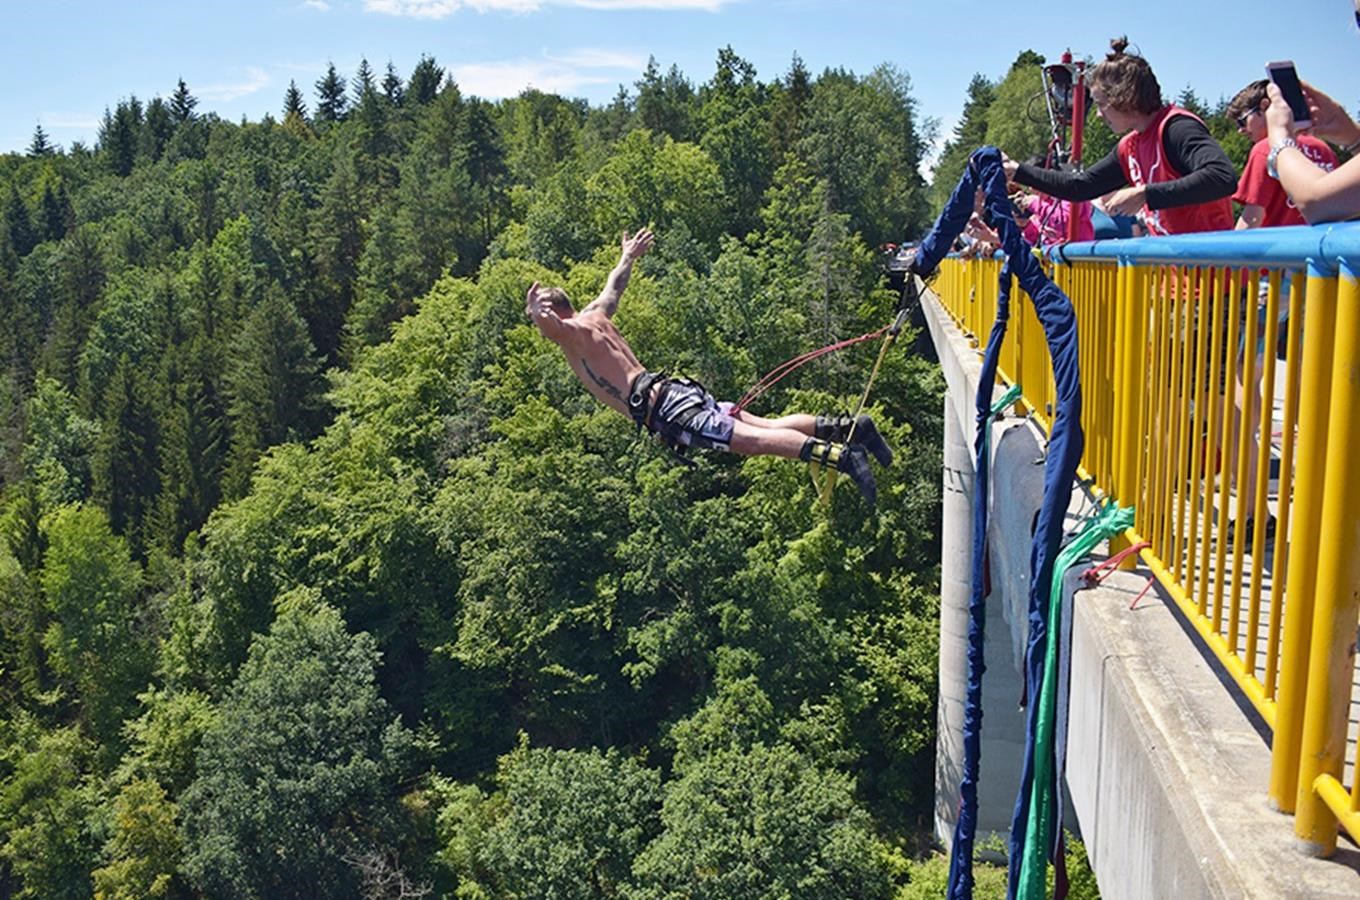 Užijte si bungee jumping, ale neskákejte z mostu bezhlavě!